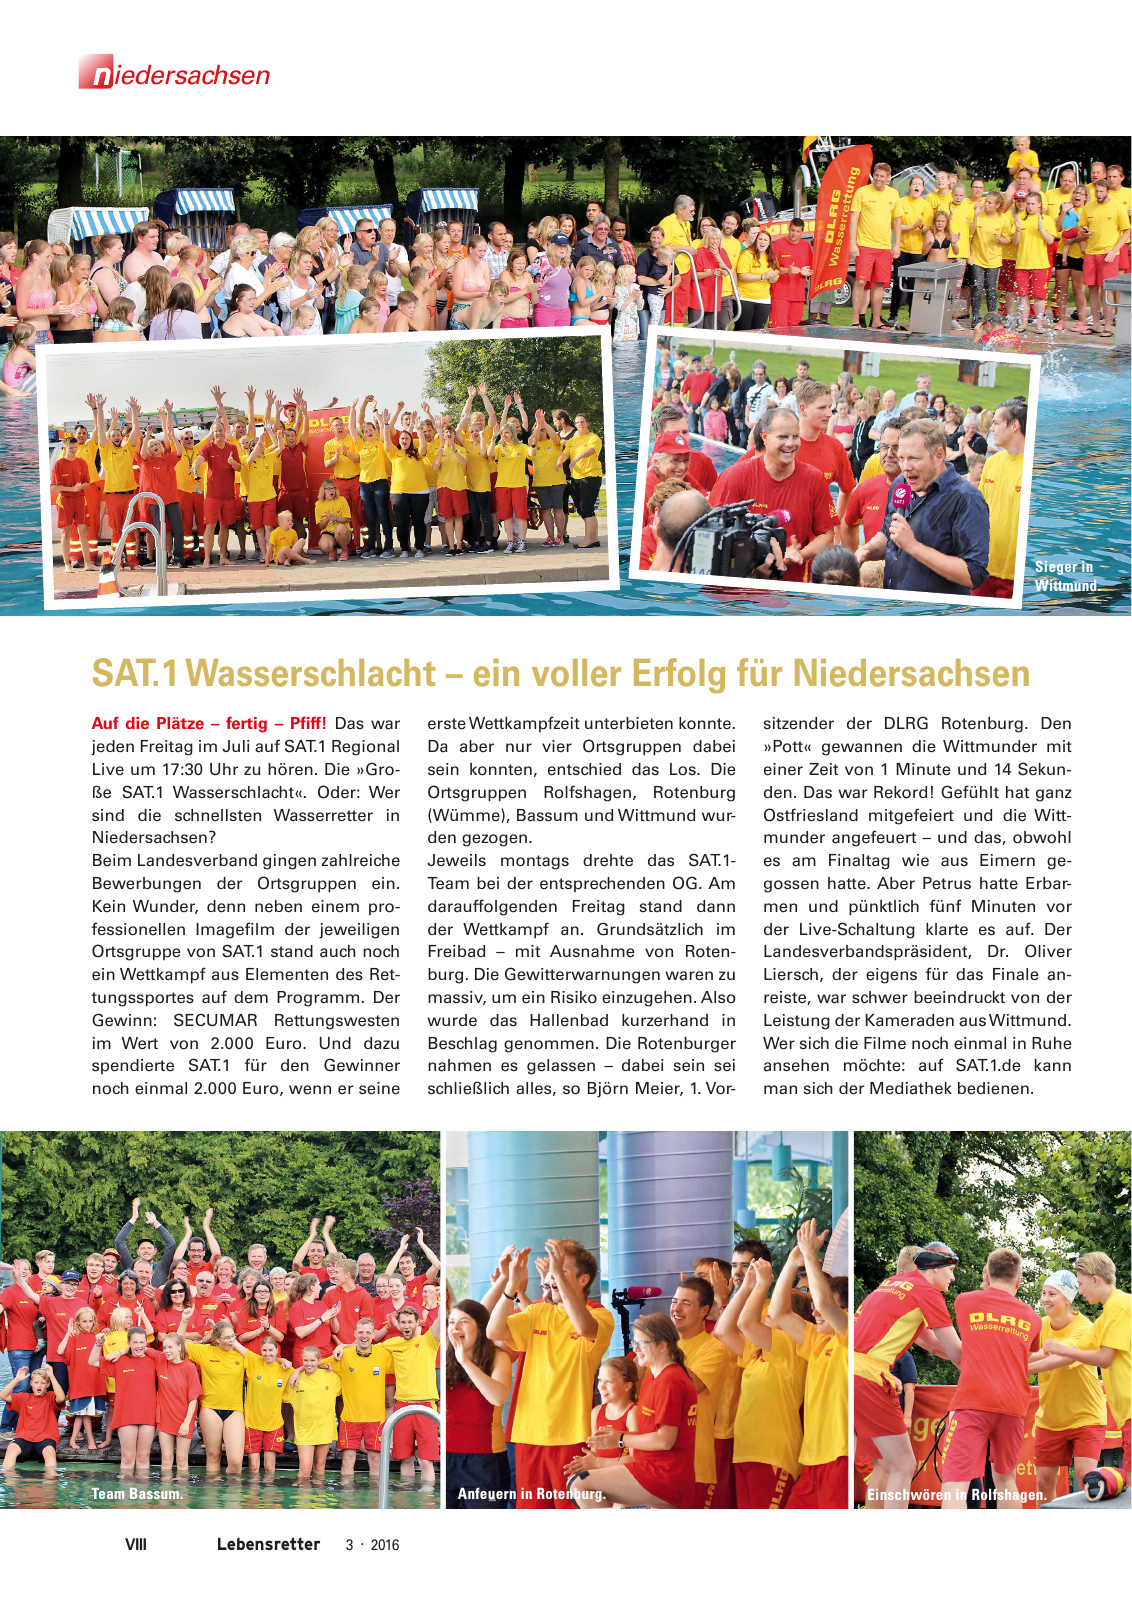 Vorschau Lebensretter 3/2016 - Regionalausgabe Niedersachsen Seite 10